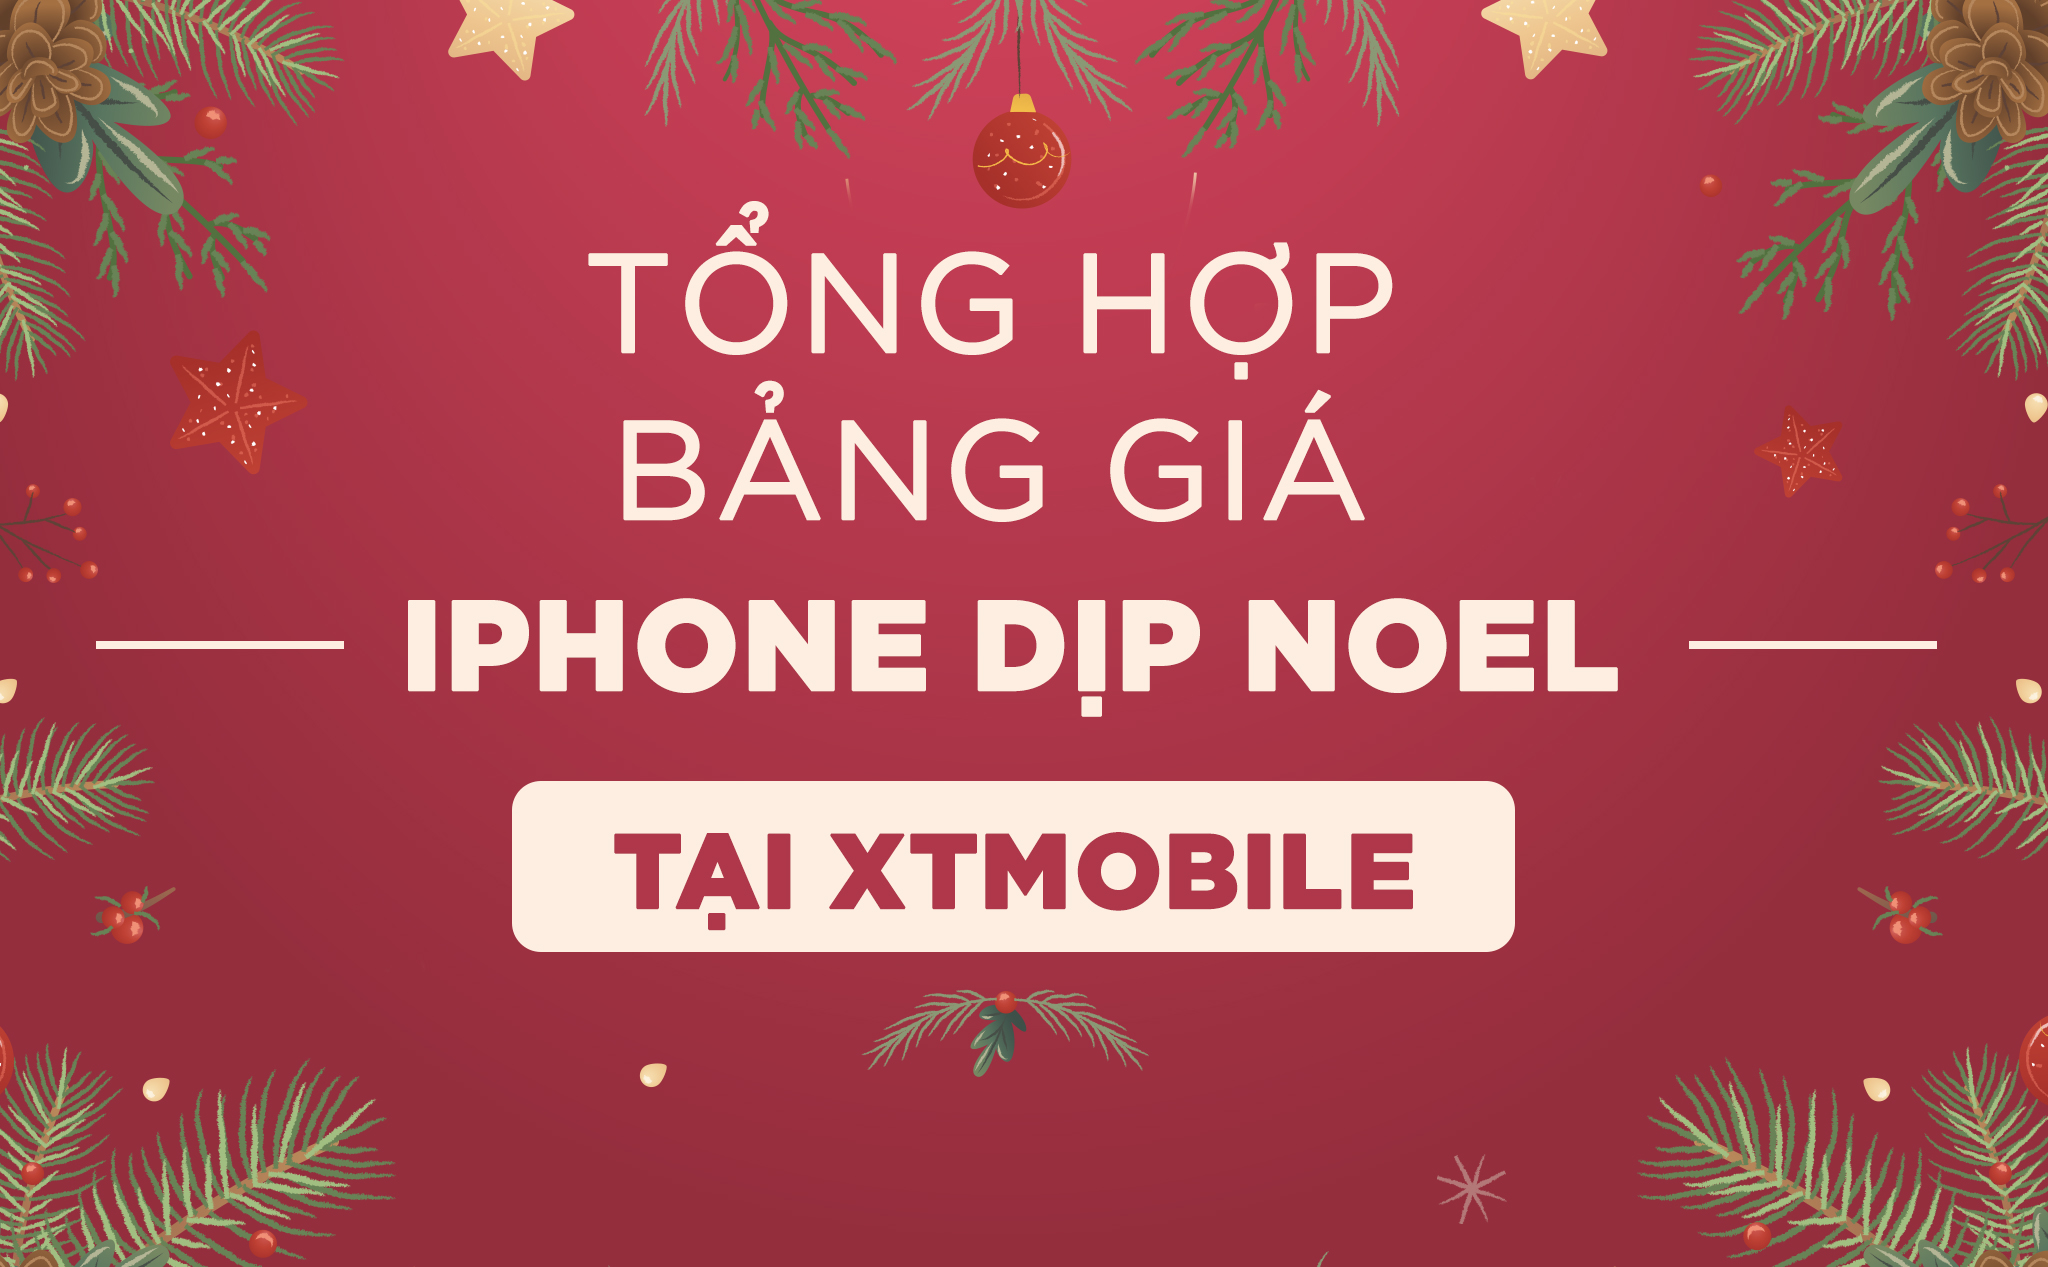 [QC] Tổng hợp bảng giá iPhone dịp Noel: iPhone 7 Plus dưới 7 triệu đồng tại XTmobile